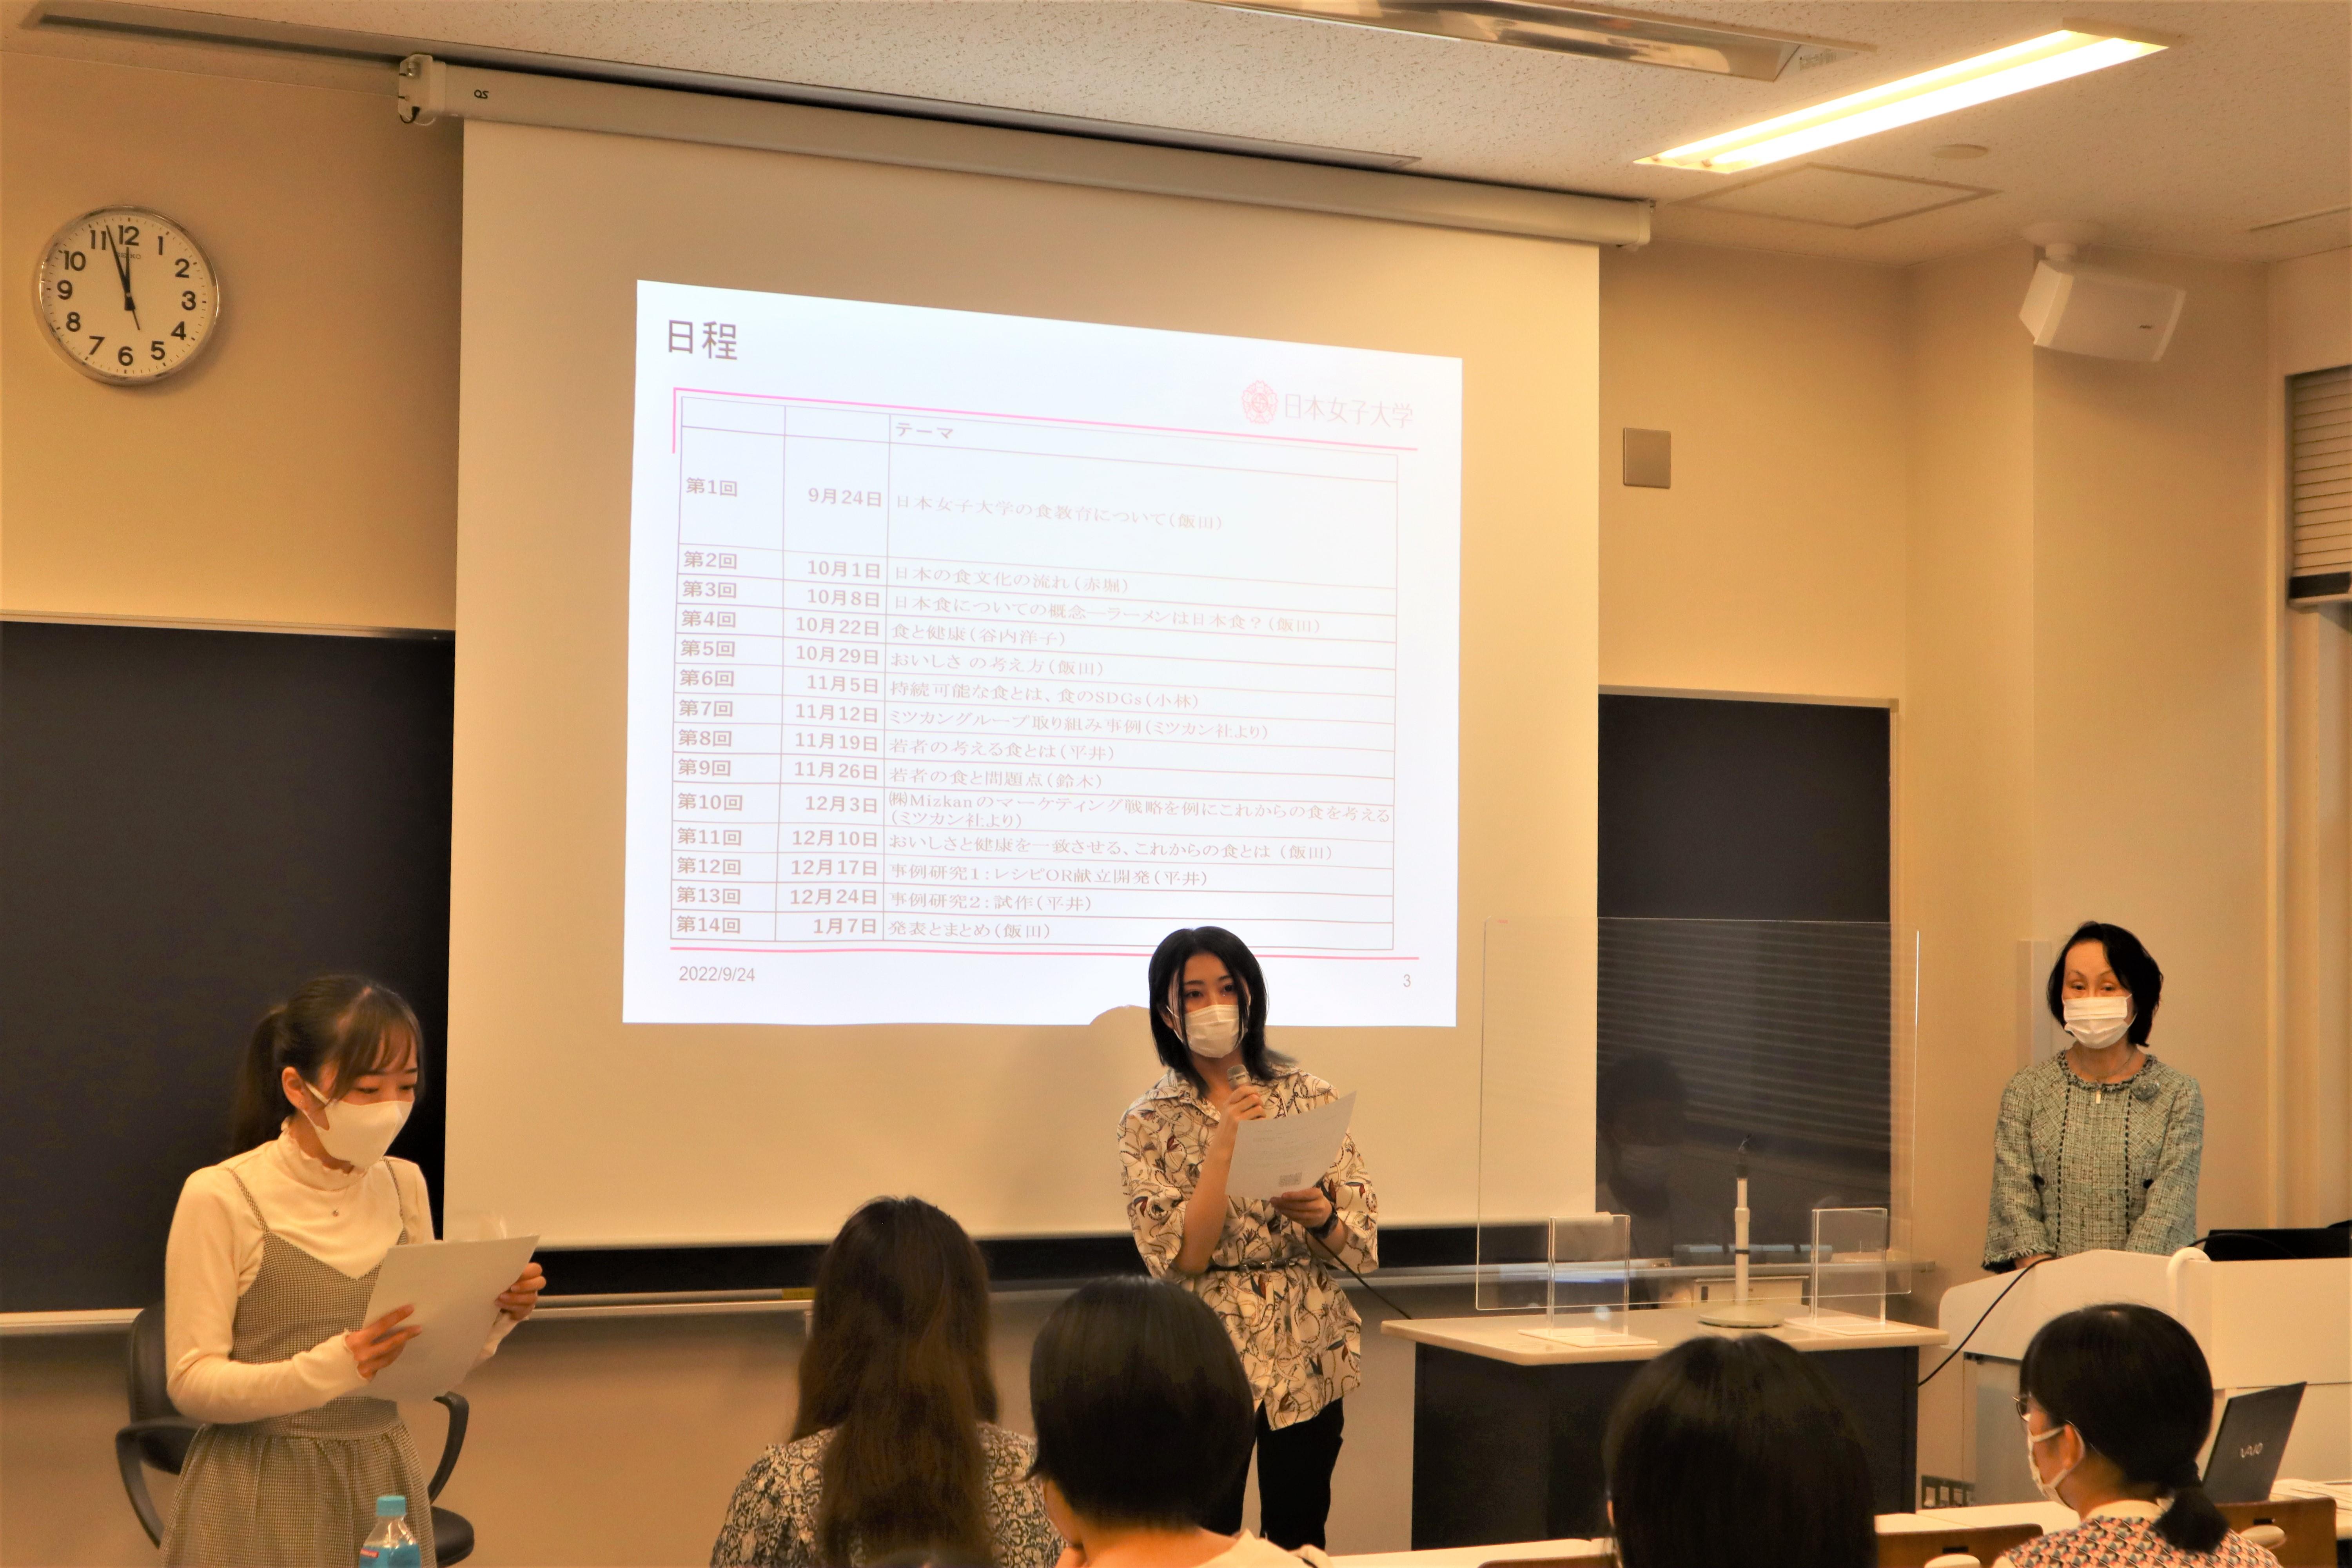 ミツカングループと日本女子大学が''未来の食''を共に探求する授業を開始 -- これからの日本の食を共創する『にっぽん食プロジェクト』の一環で、食を多角的に学び、議論を深めながら''にっぽん食''の料理を考案予定 --